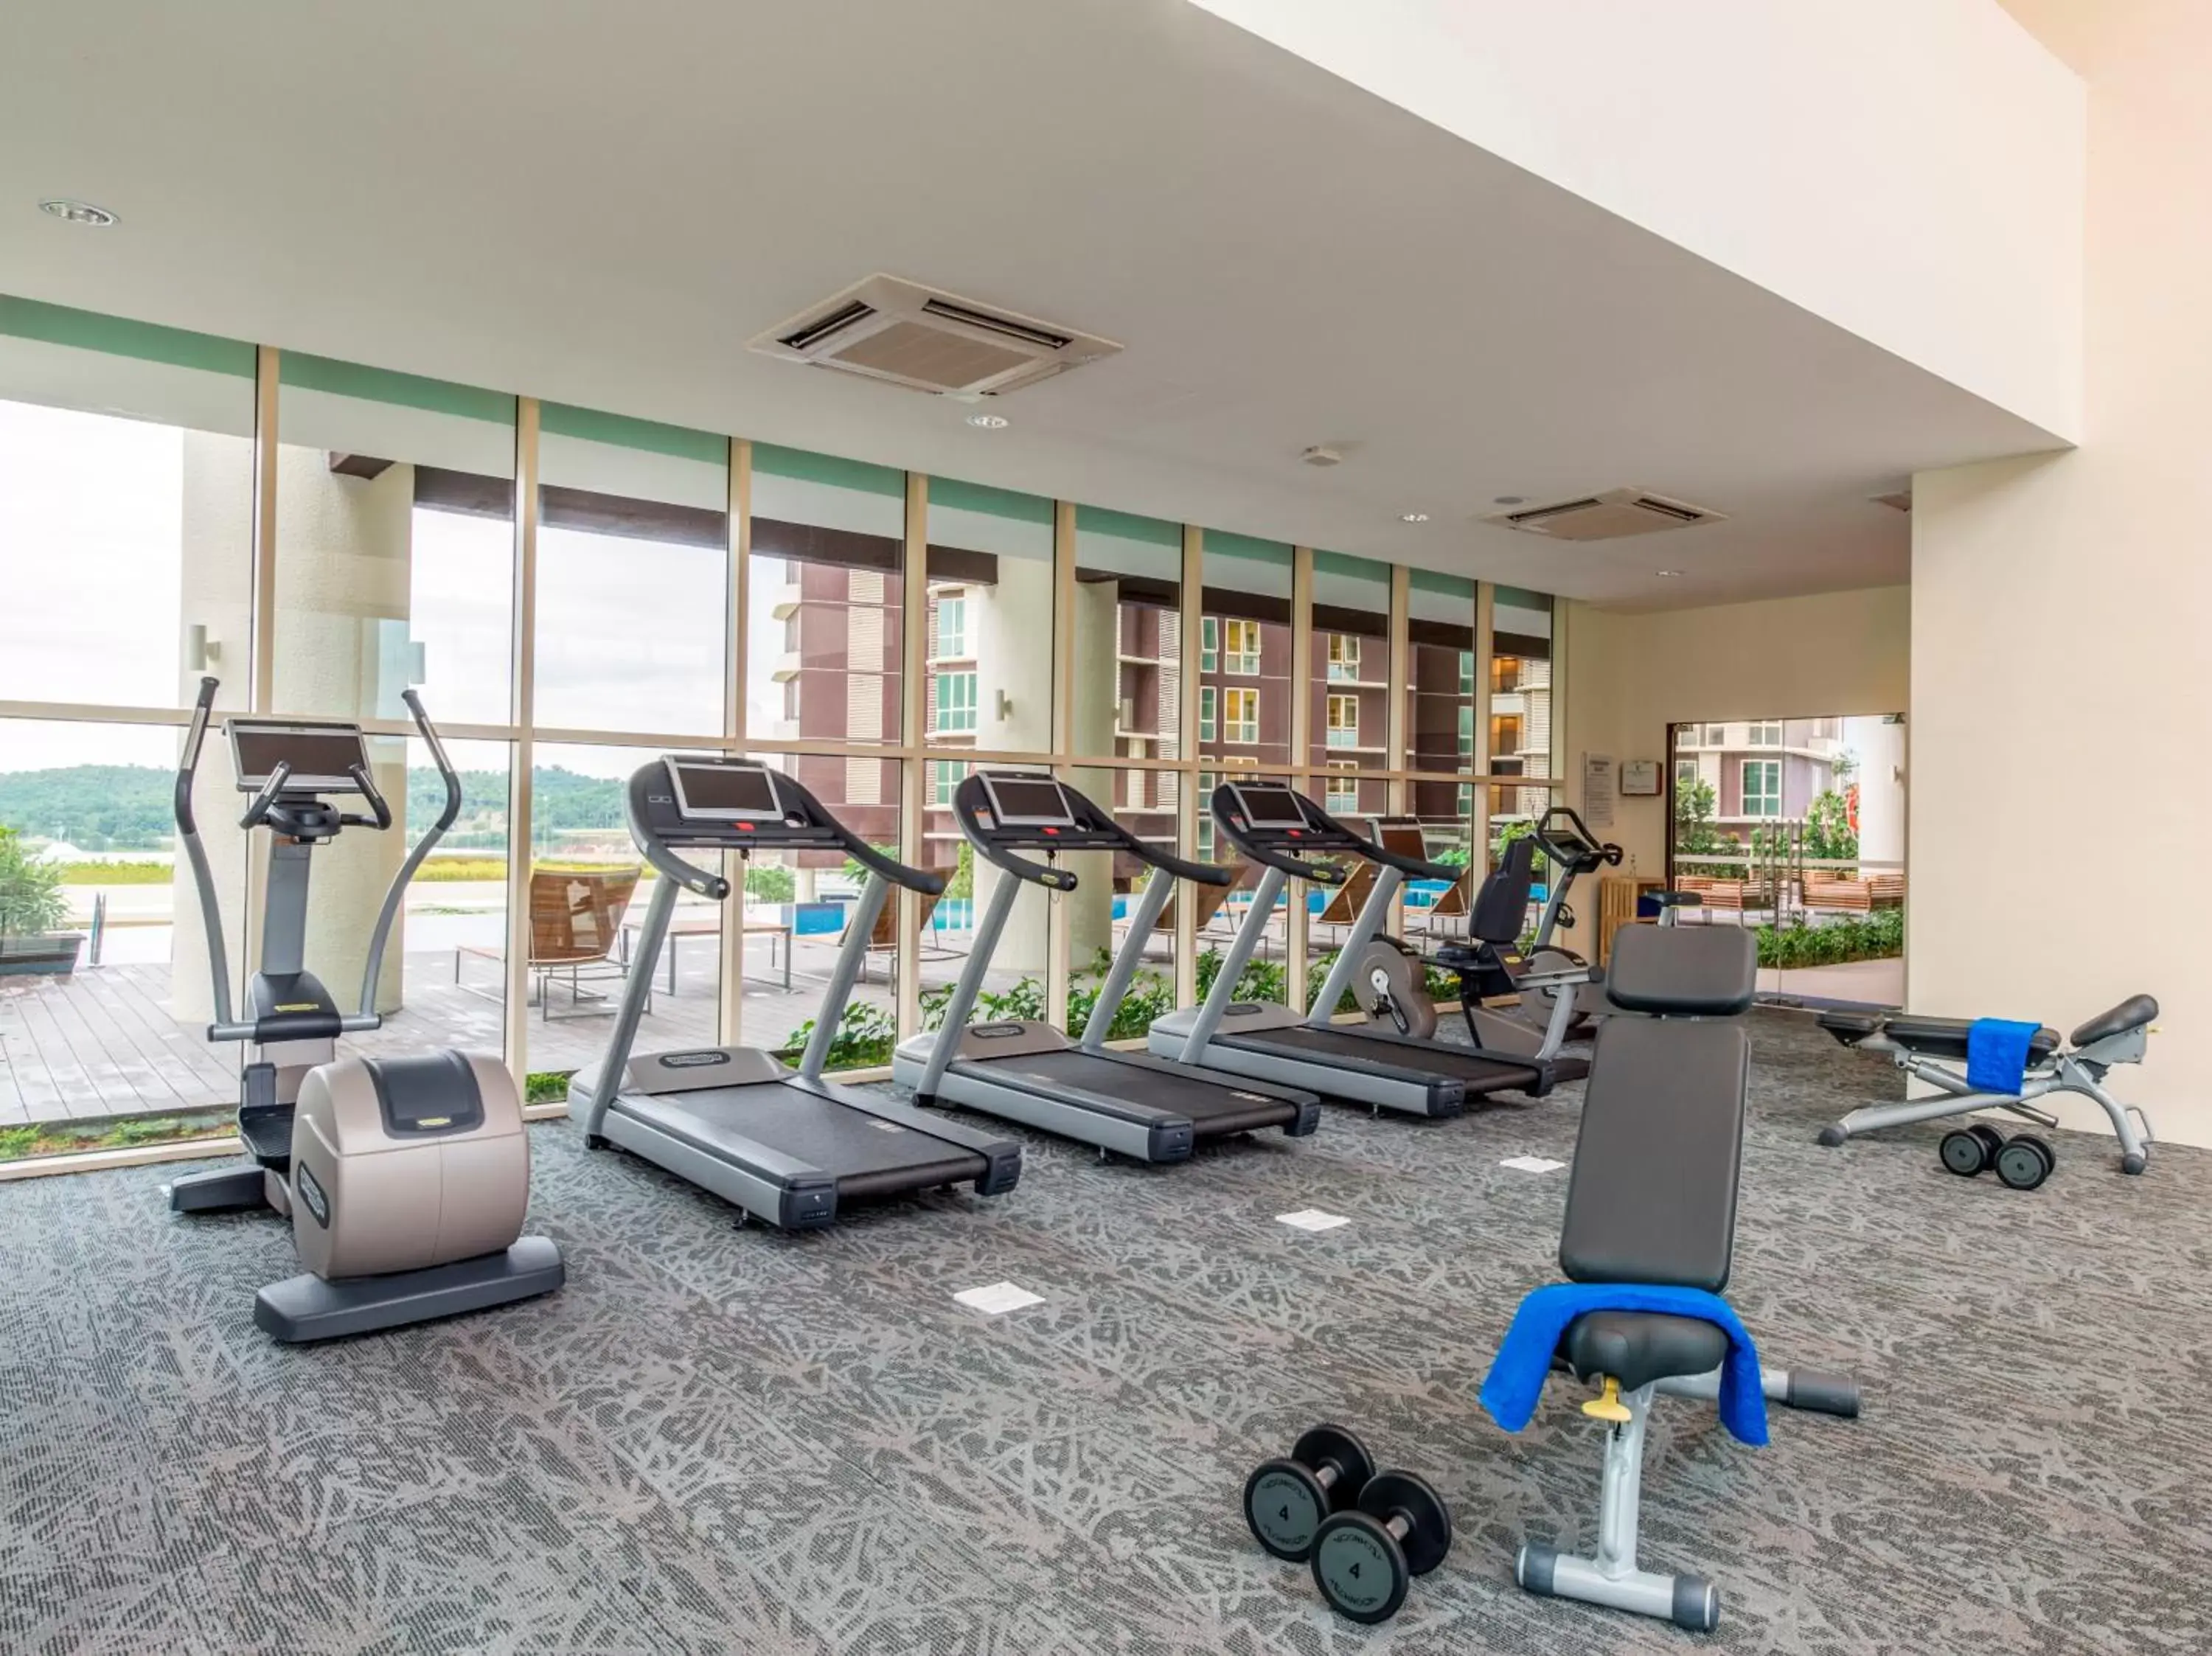 Fitness centre/facilities, Fitness Center/Facilities in Somerset Medini Iskandar Puteri